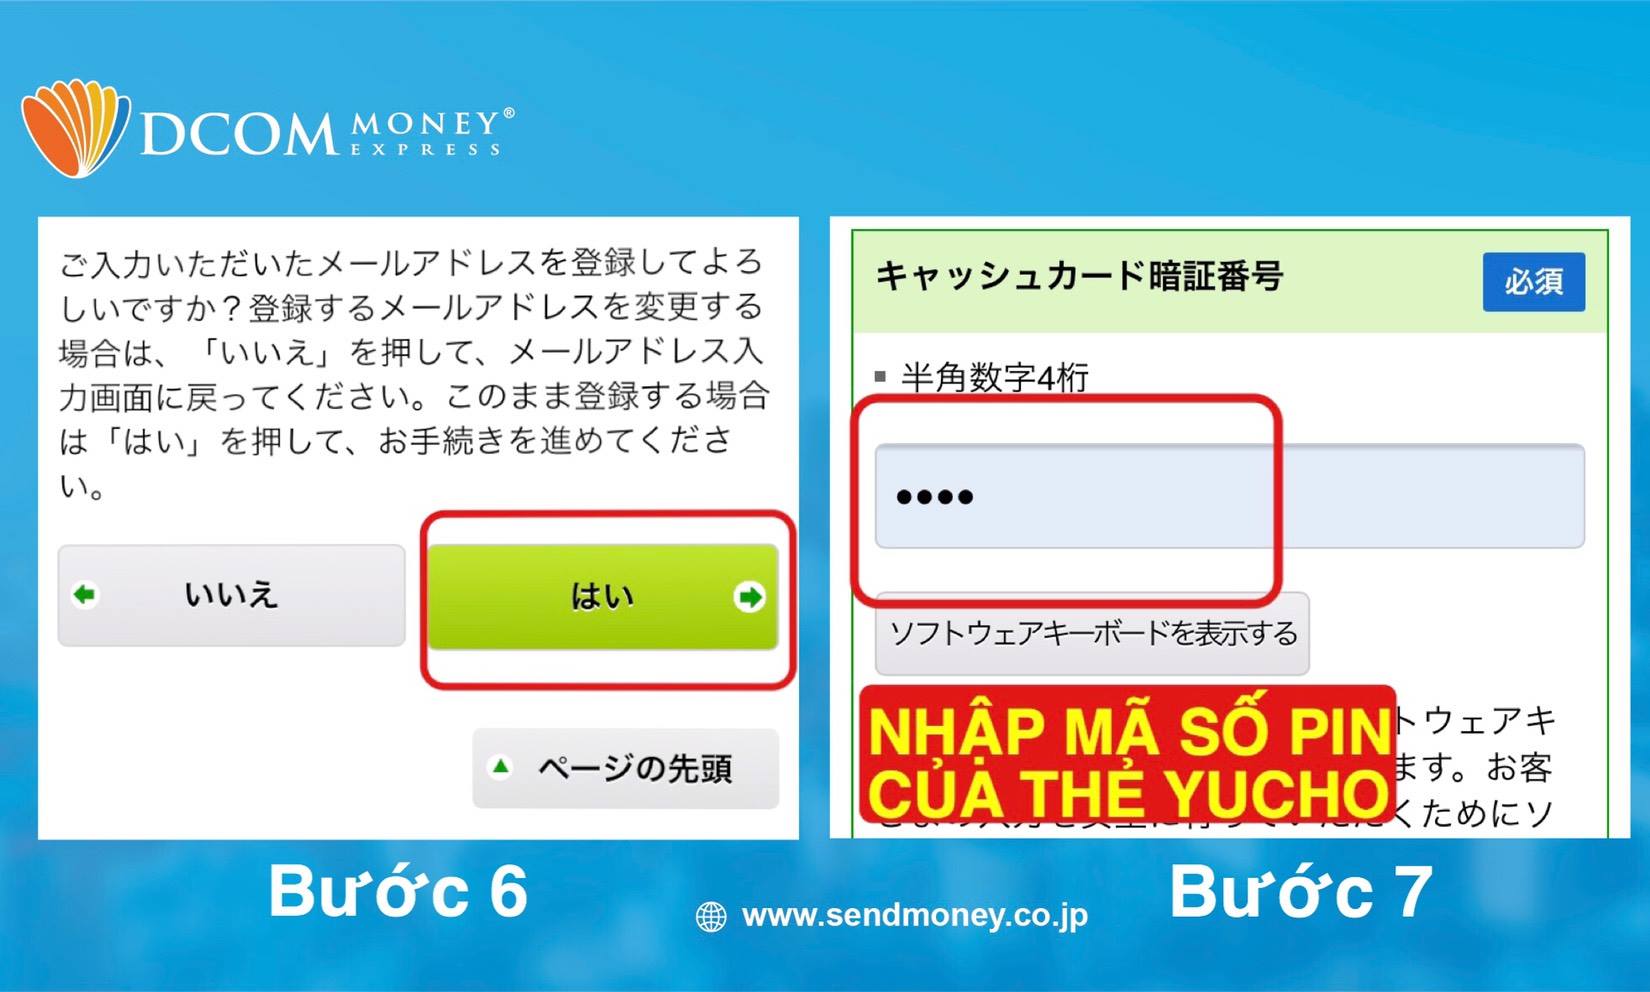 Số PIN: Mật khẩu trùng với mật khẩu của thẻ ATM Yucho